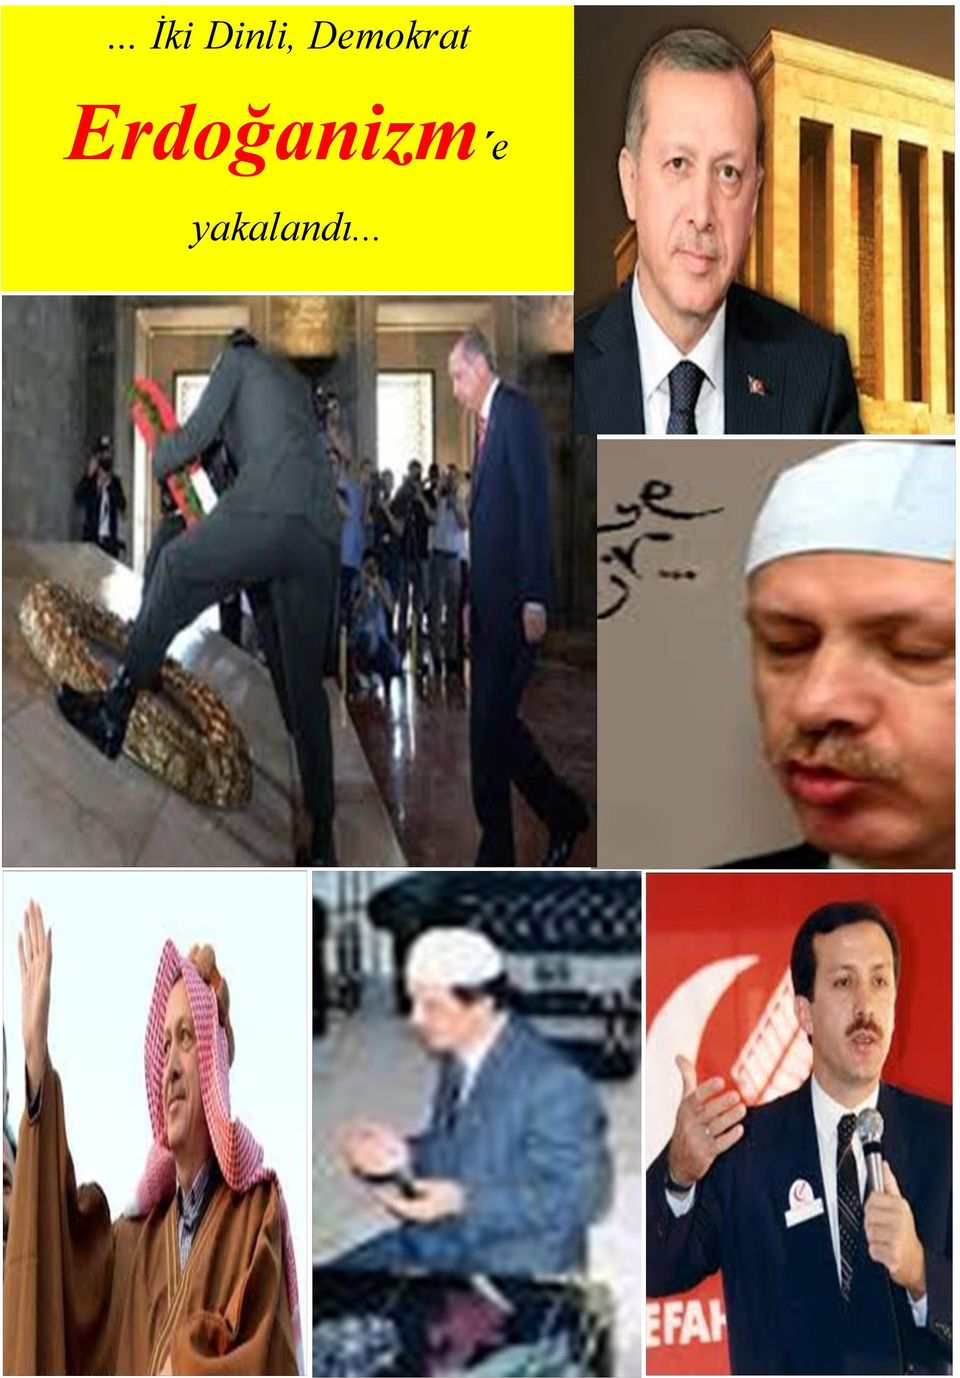 Erdoğanizm